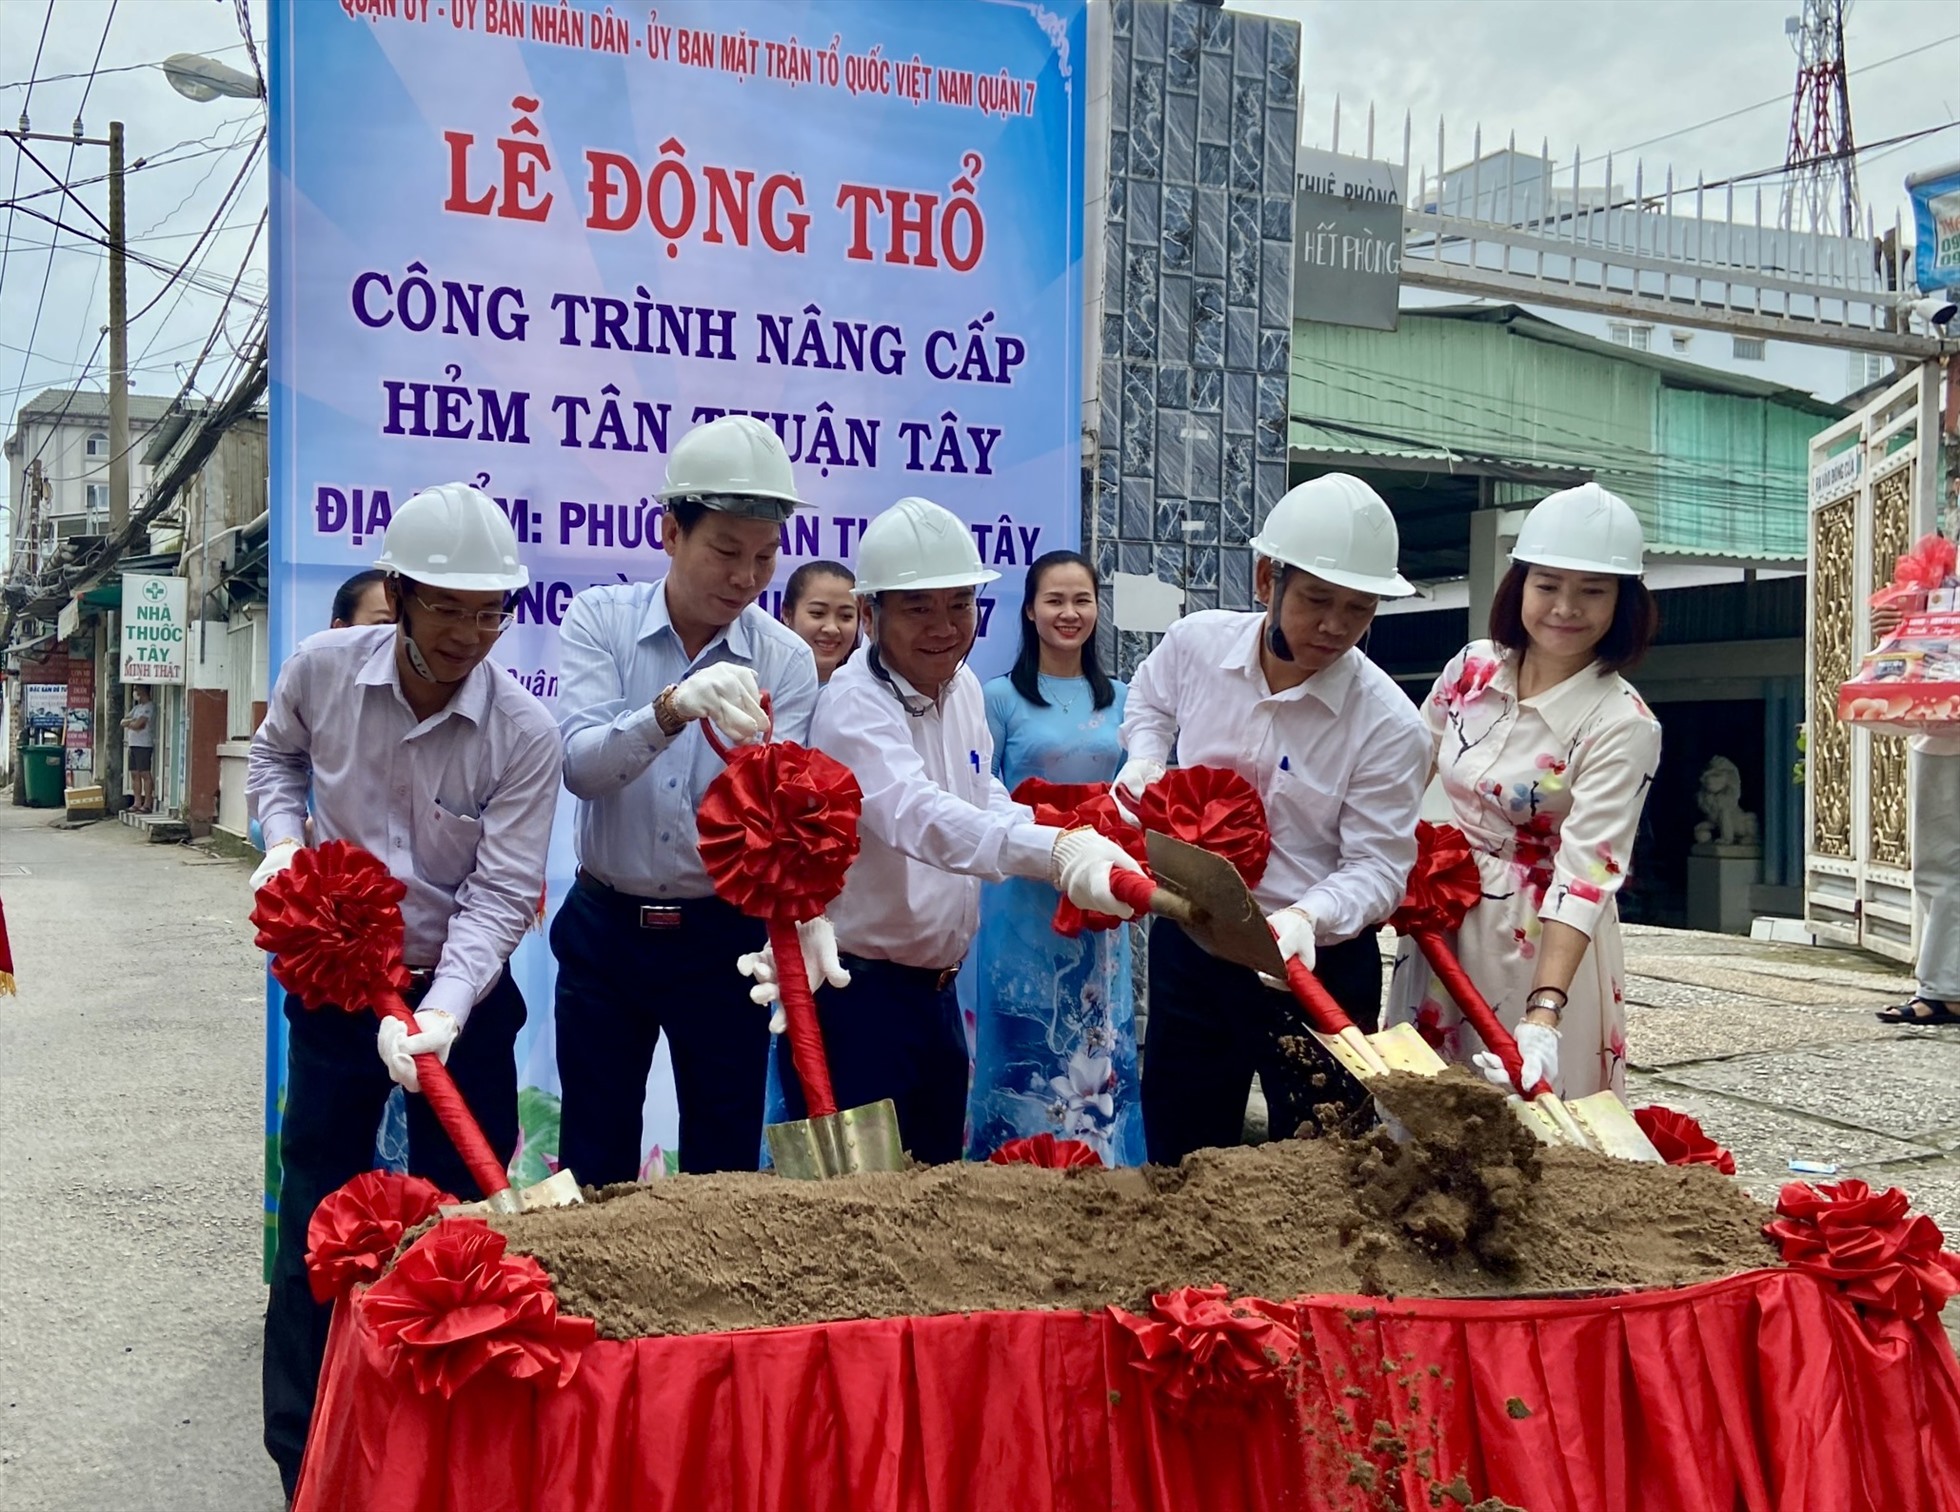 Các đại biểu thực hiện nghi lễ khởi công công trình nâng cấp hẻm Tân Thuận Tây.